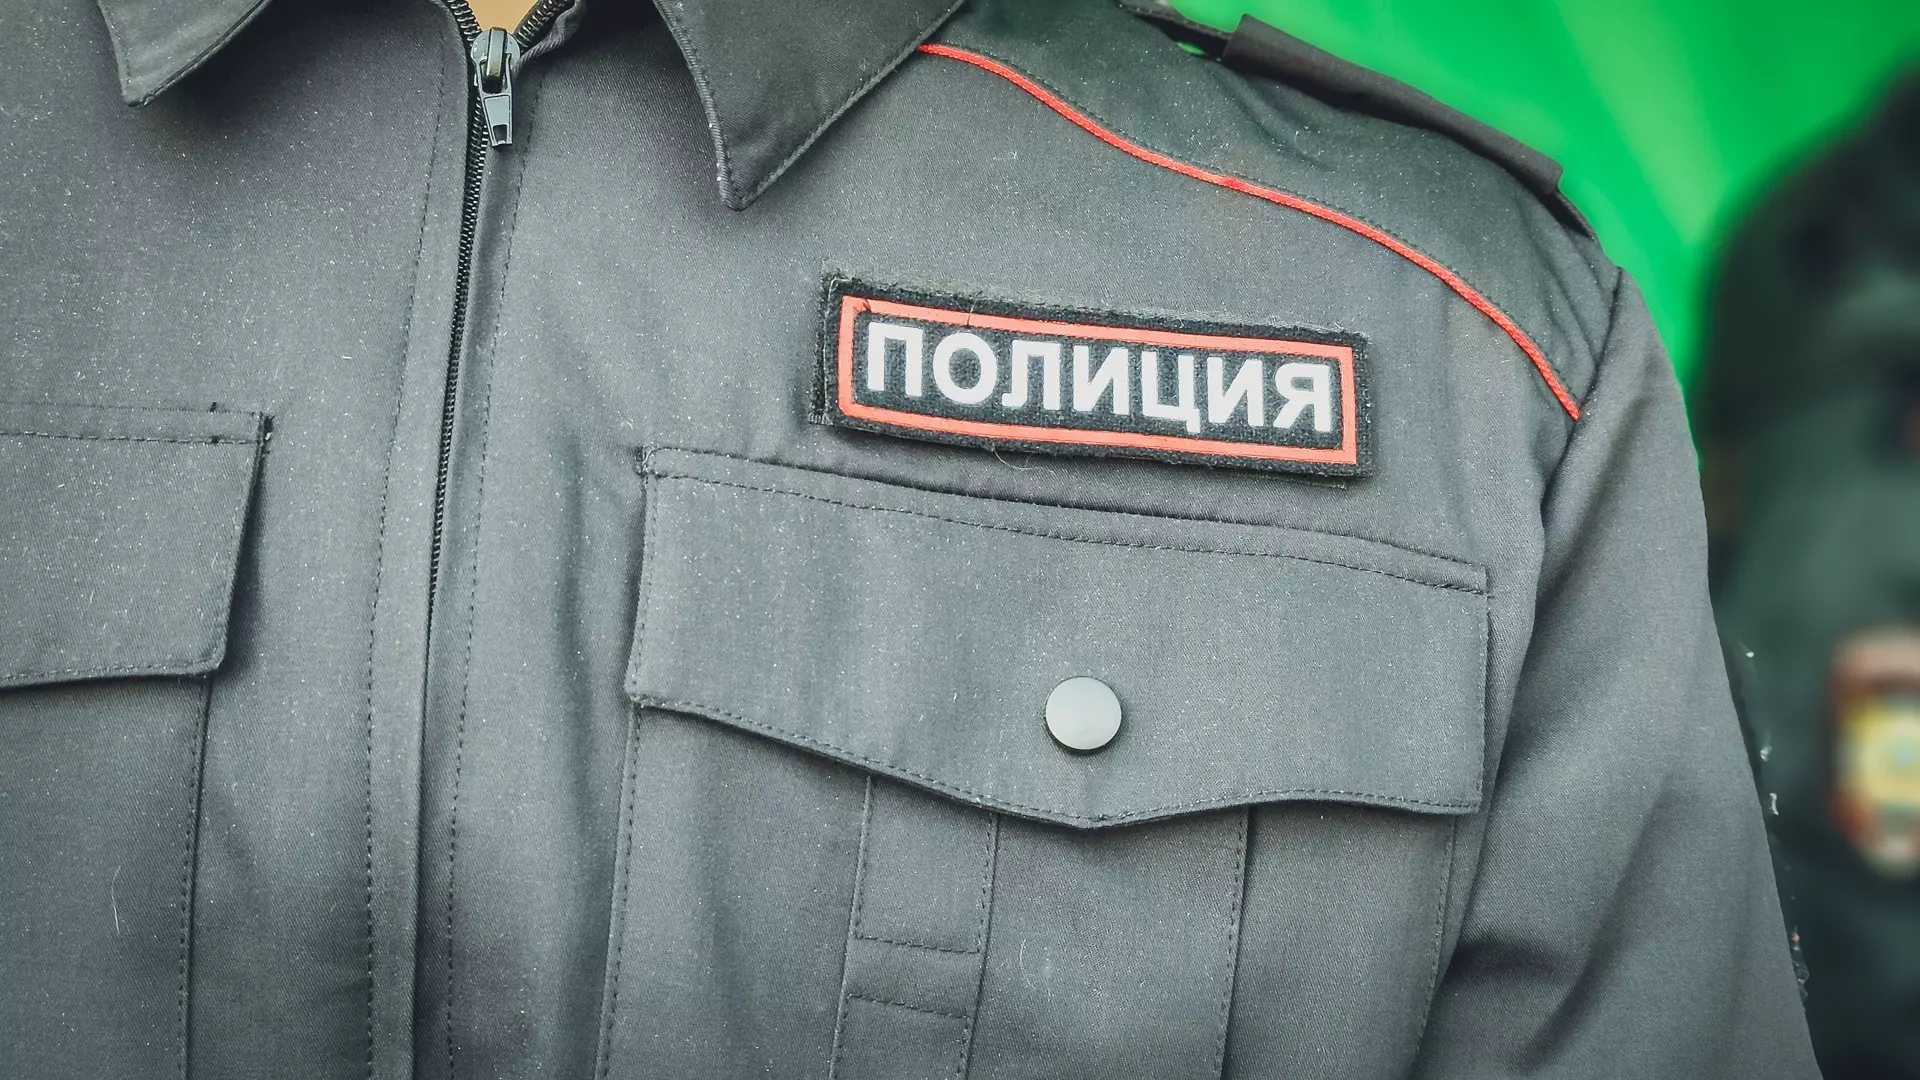 В Удмуртии риелтор похитила у клиента более полумиллиона рублей